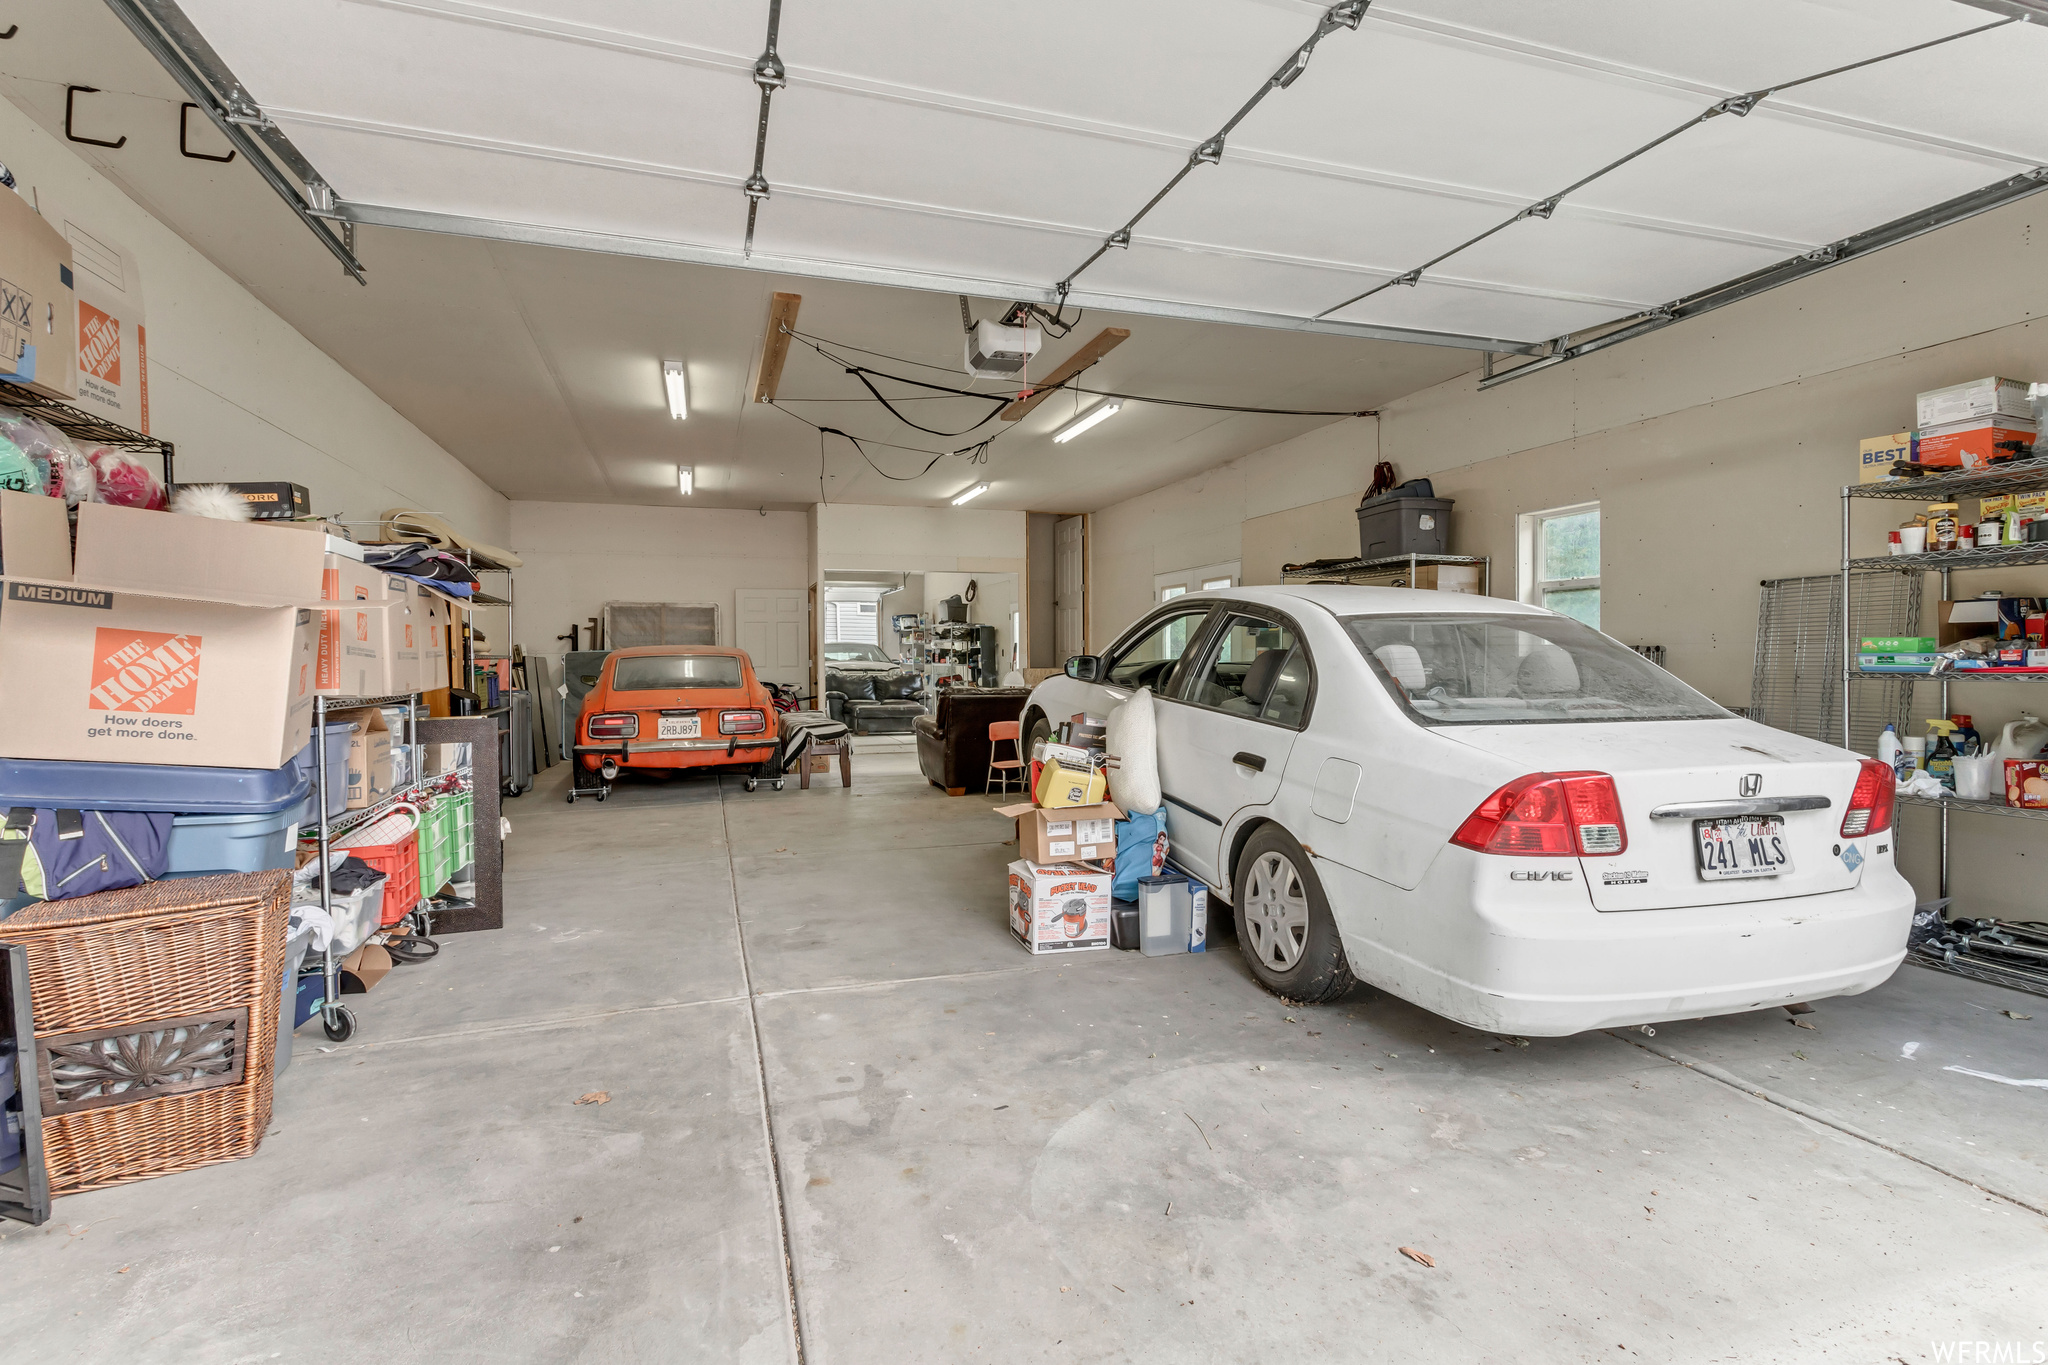 View of 4-car garage